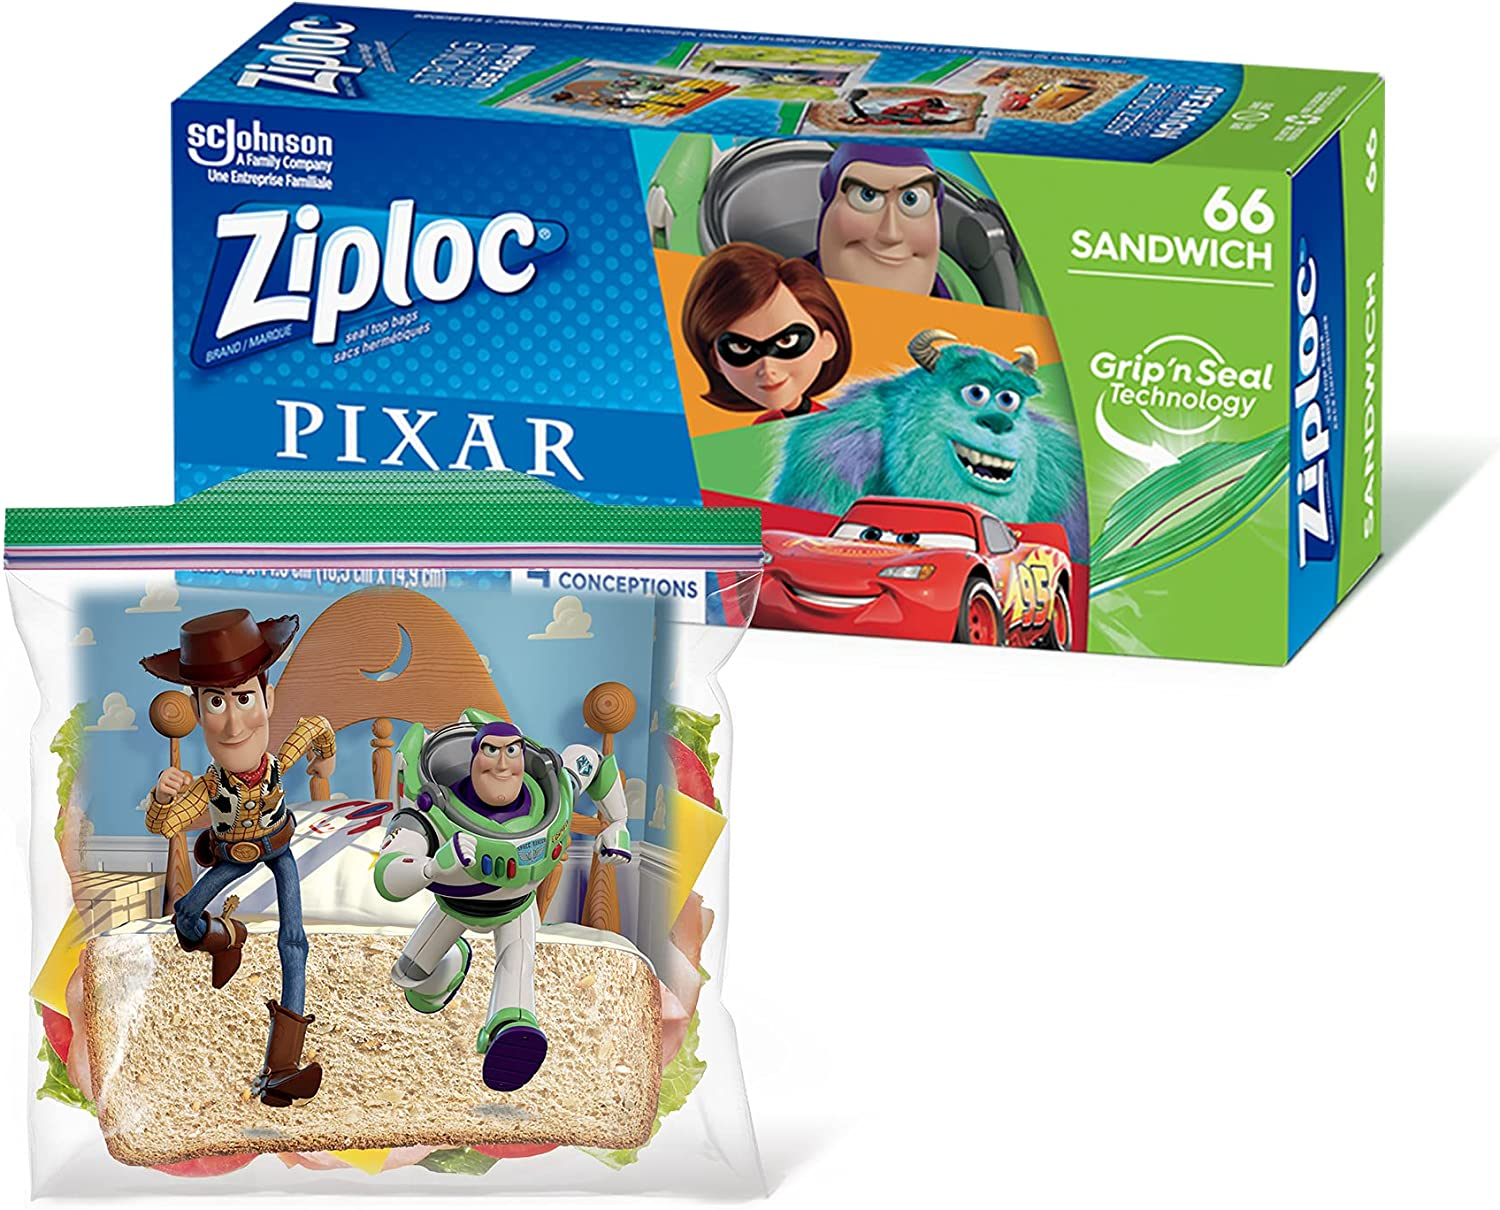 Ziploc Sandwich Bags - 66 Count (Pixar Designs) $2.57